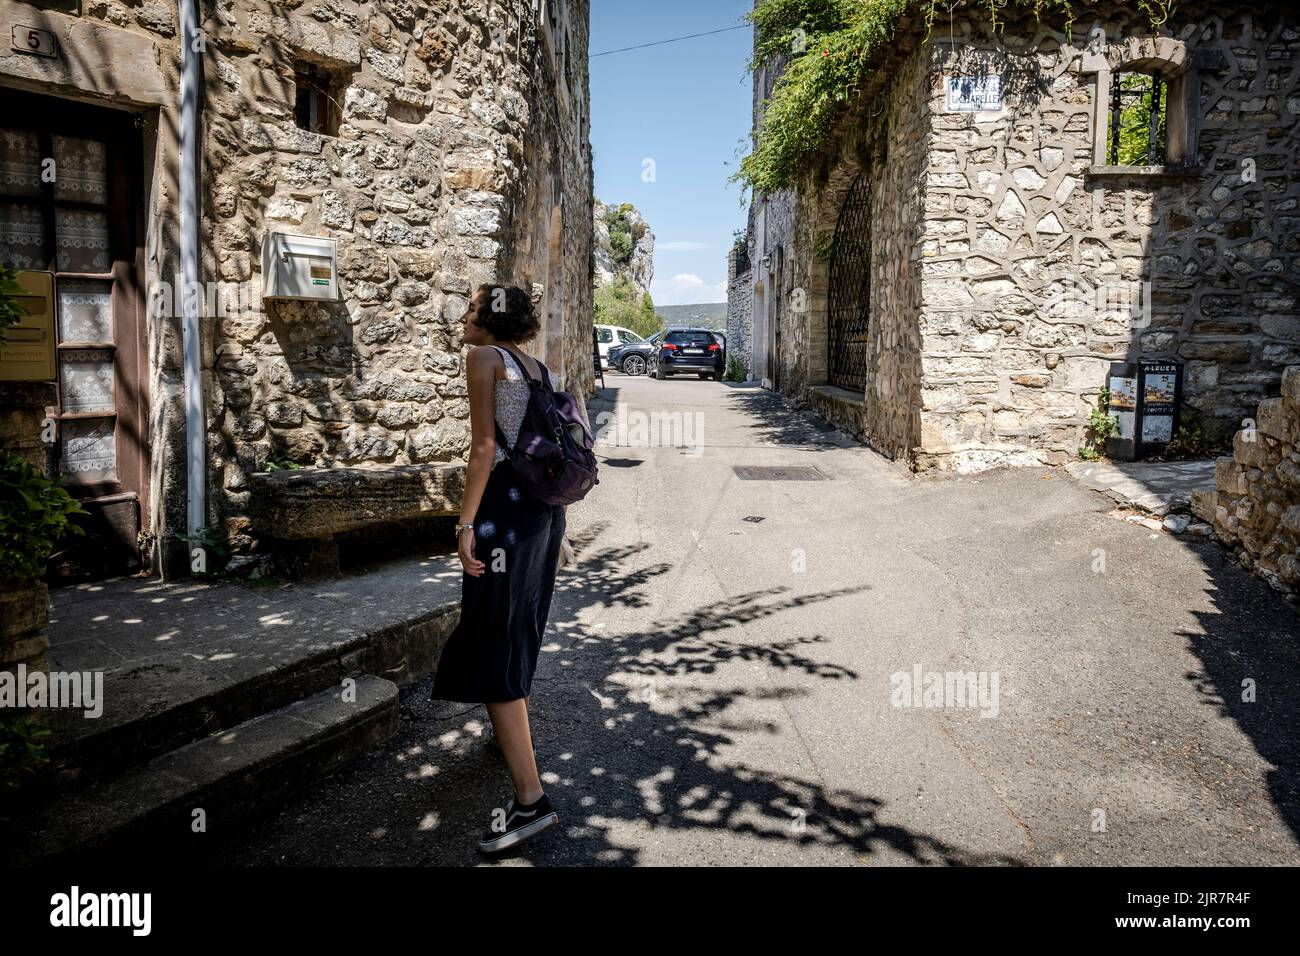 rue du village d'Aigueze, petit village situé au sud de la France dans le département du Gard de la région française Languedoc-Roussillon. Banque D'Images